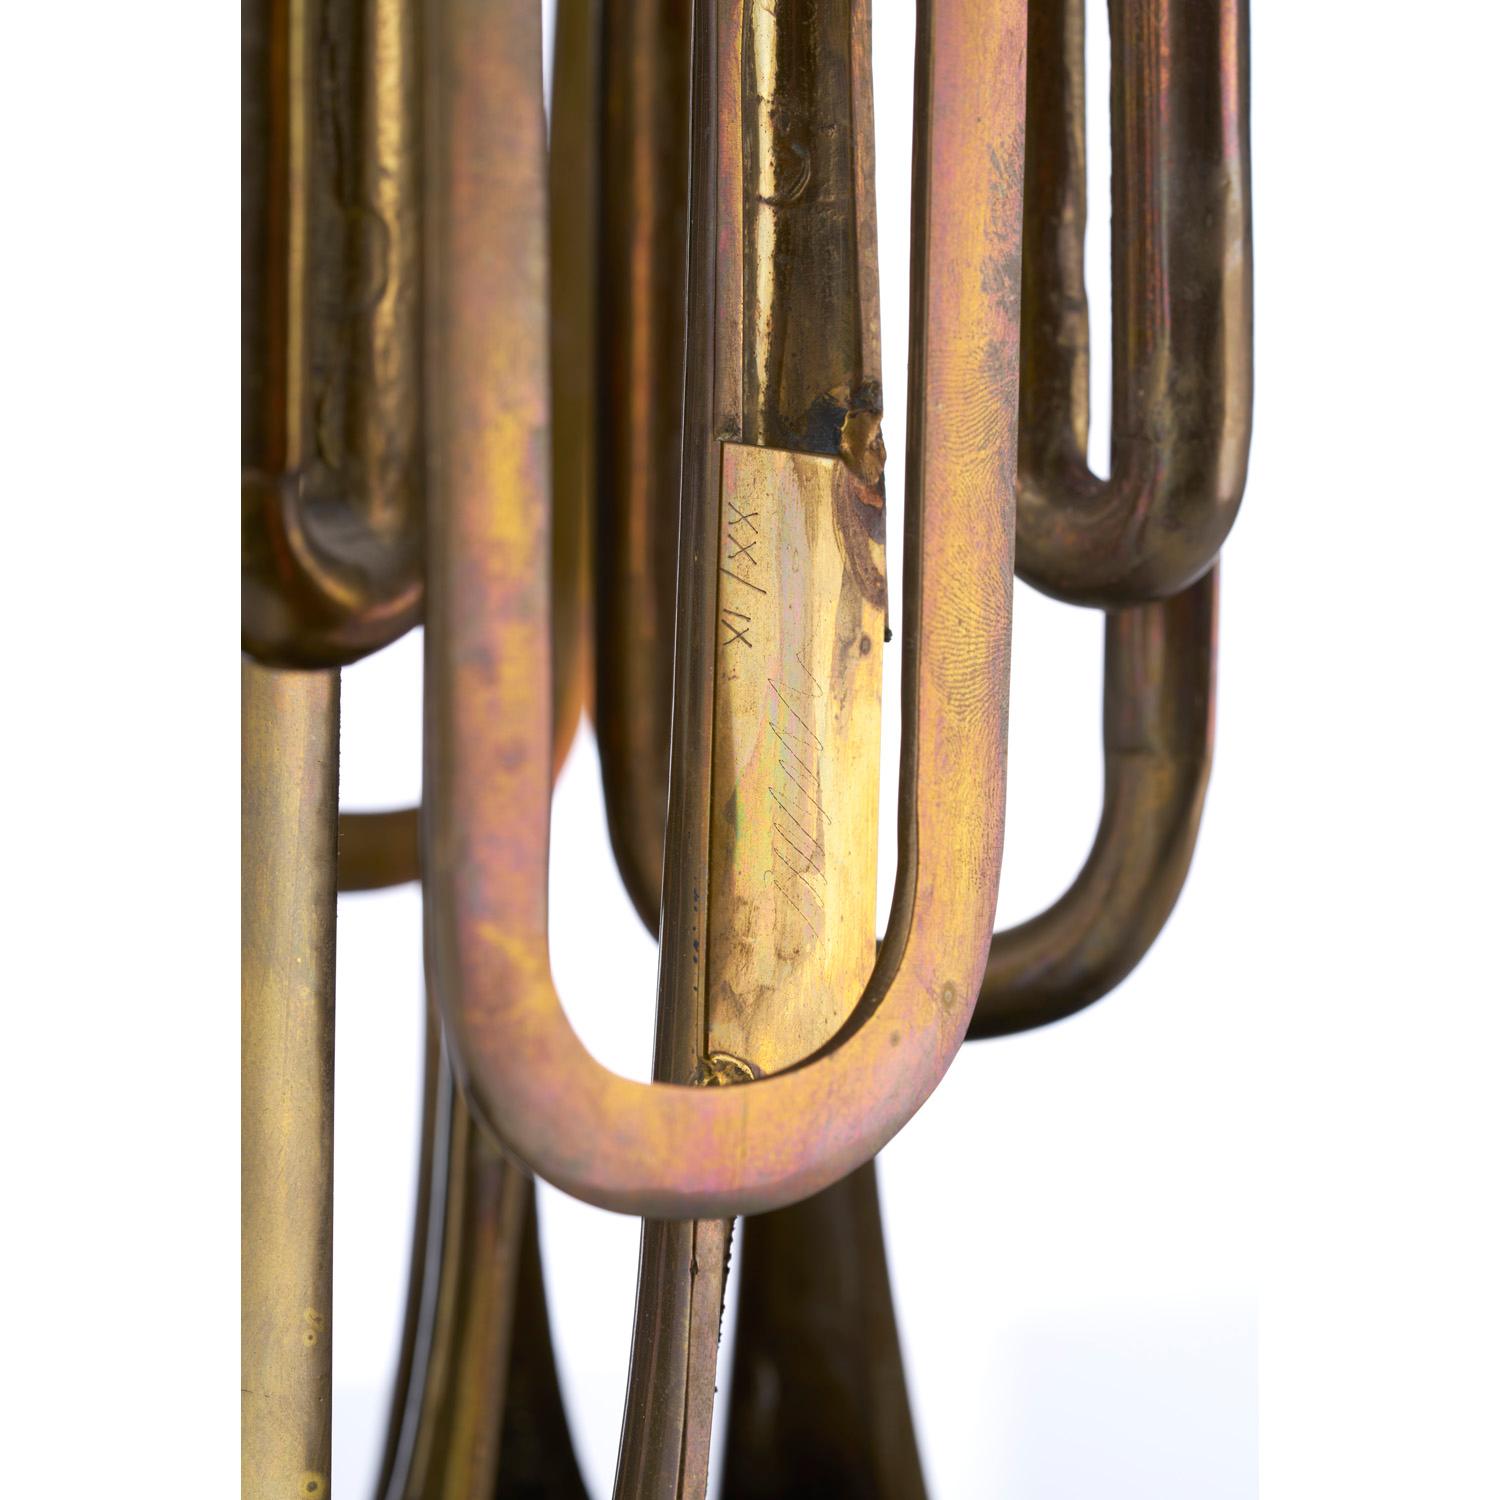 La trompette coupée - Gold Figurative Sculpture by Fernandez Arman